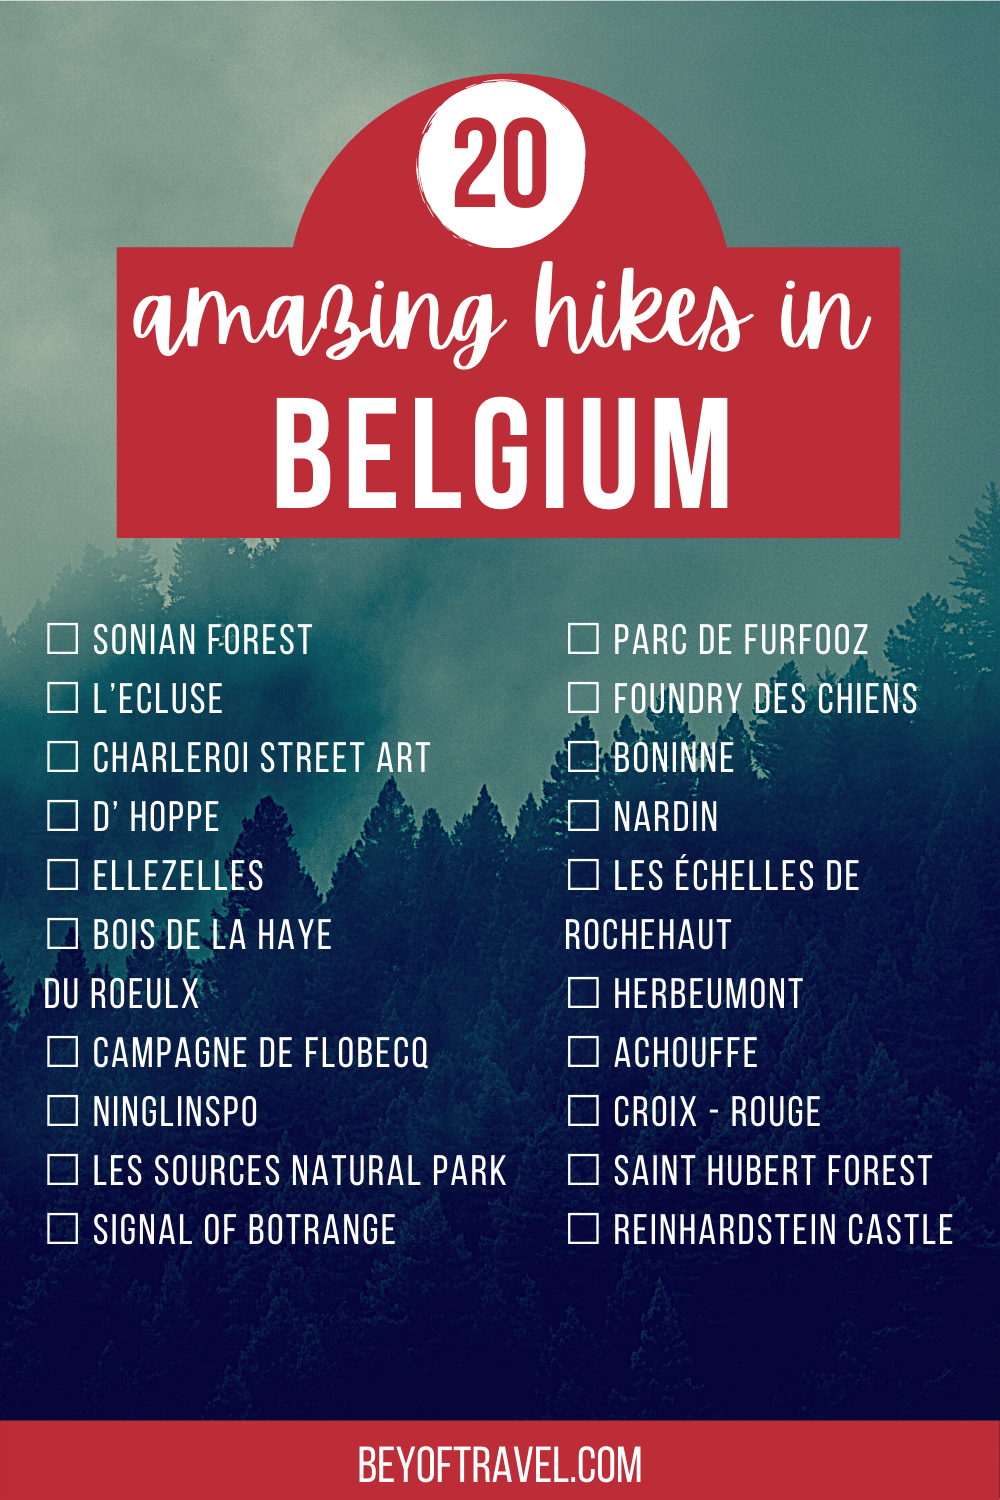 Pin 20 amazing hikes in Belgium